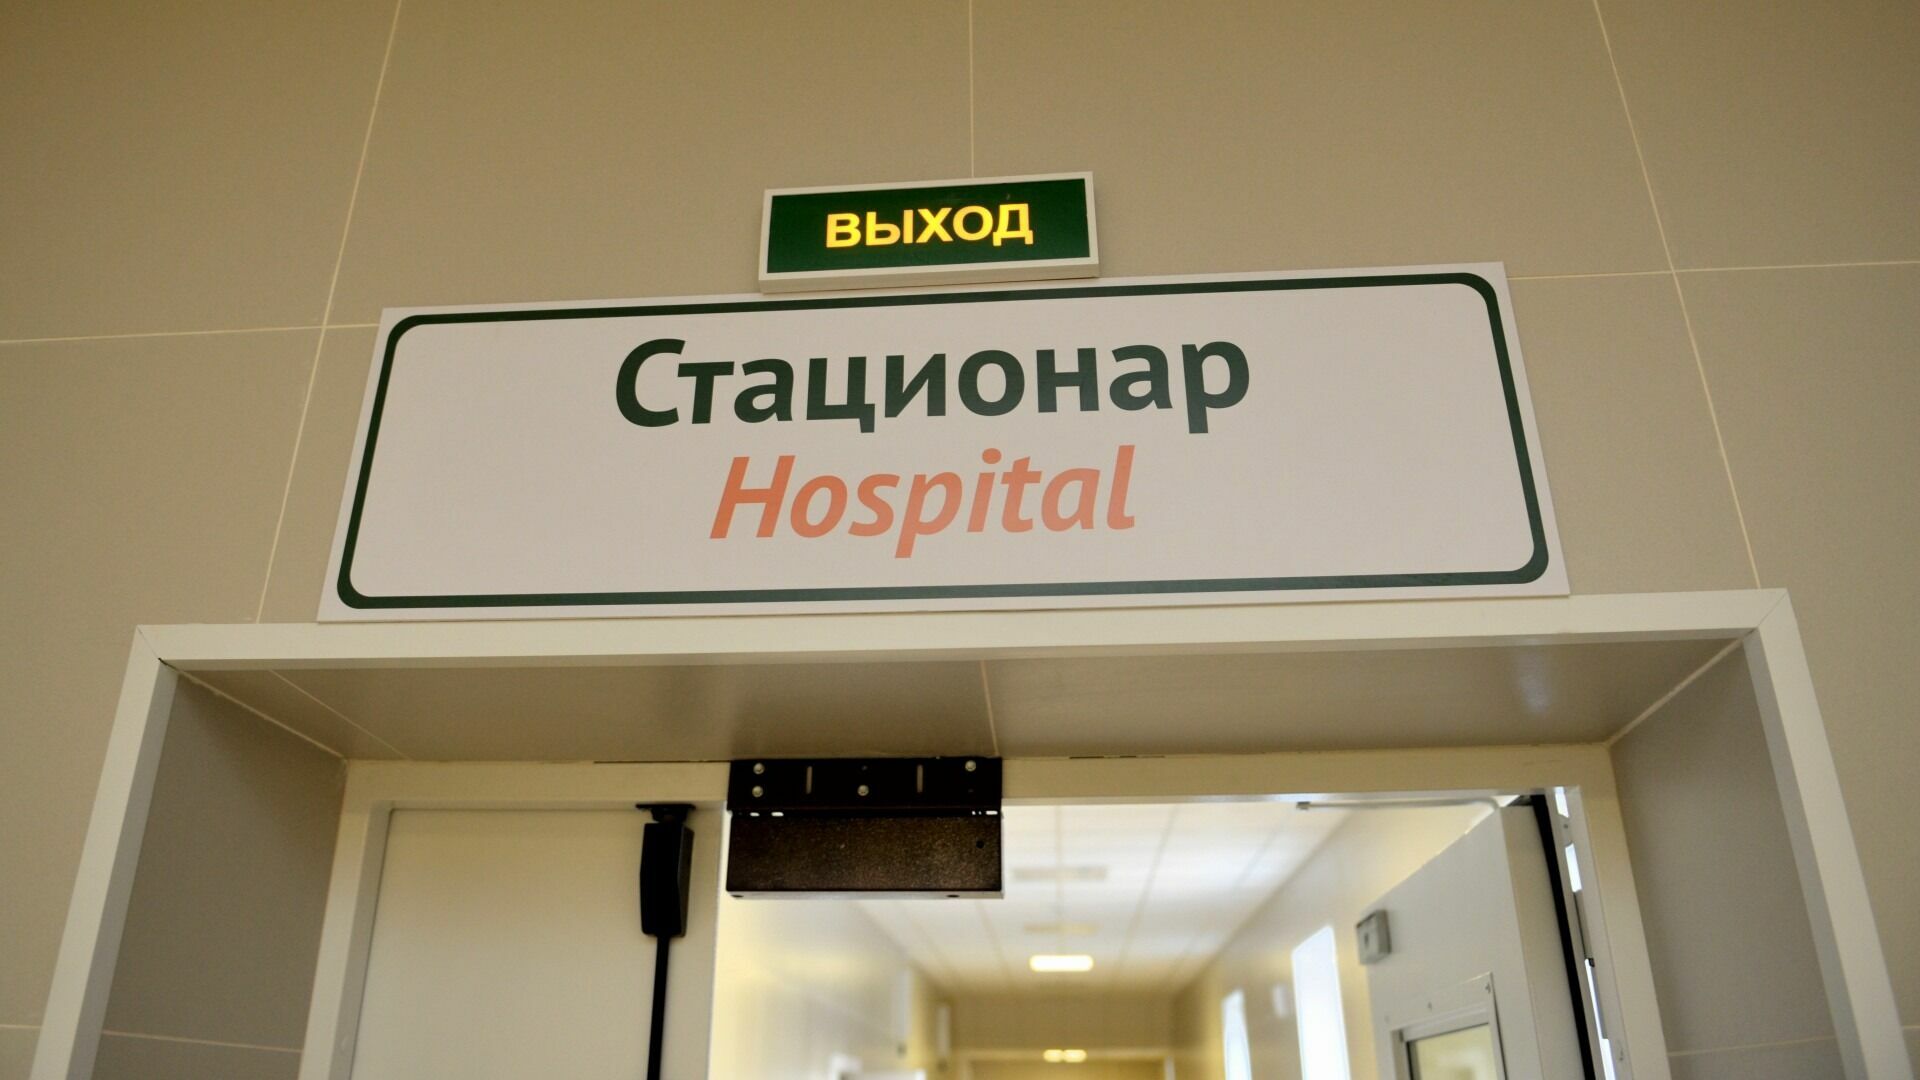 Одна из пострадавших в ДТП на Голубева в Нижнем Новгороде попала в реанимацию